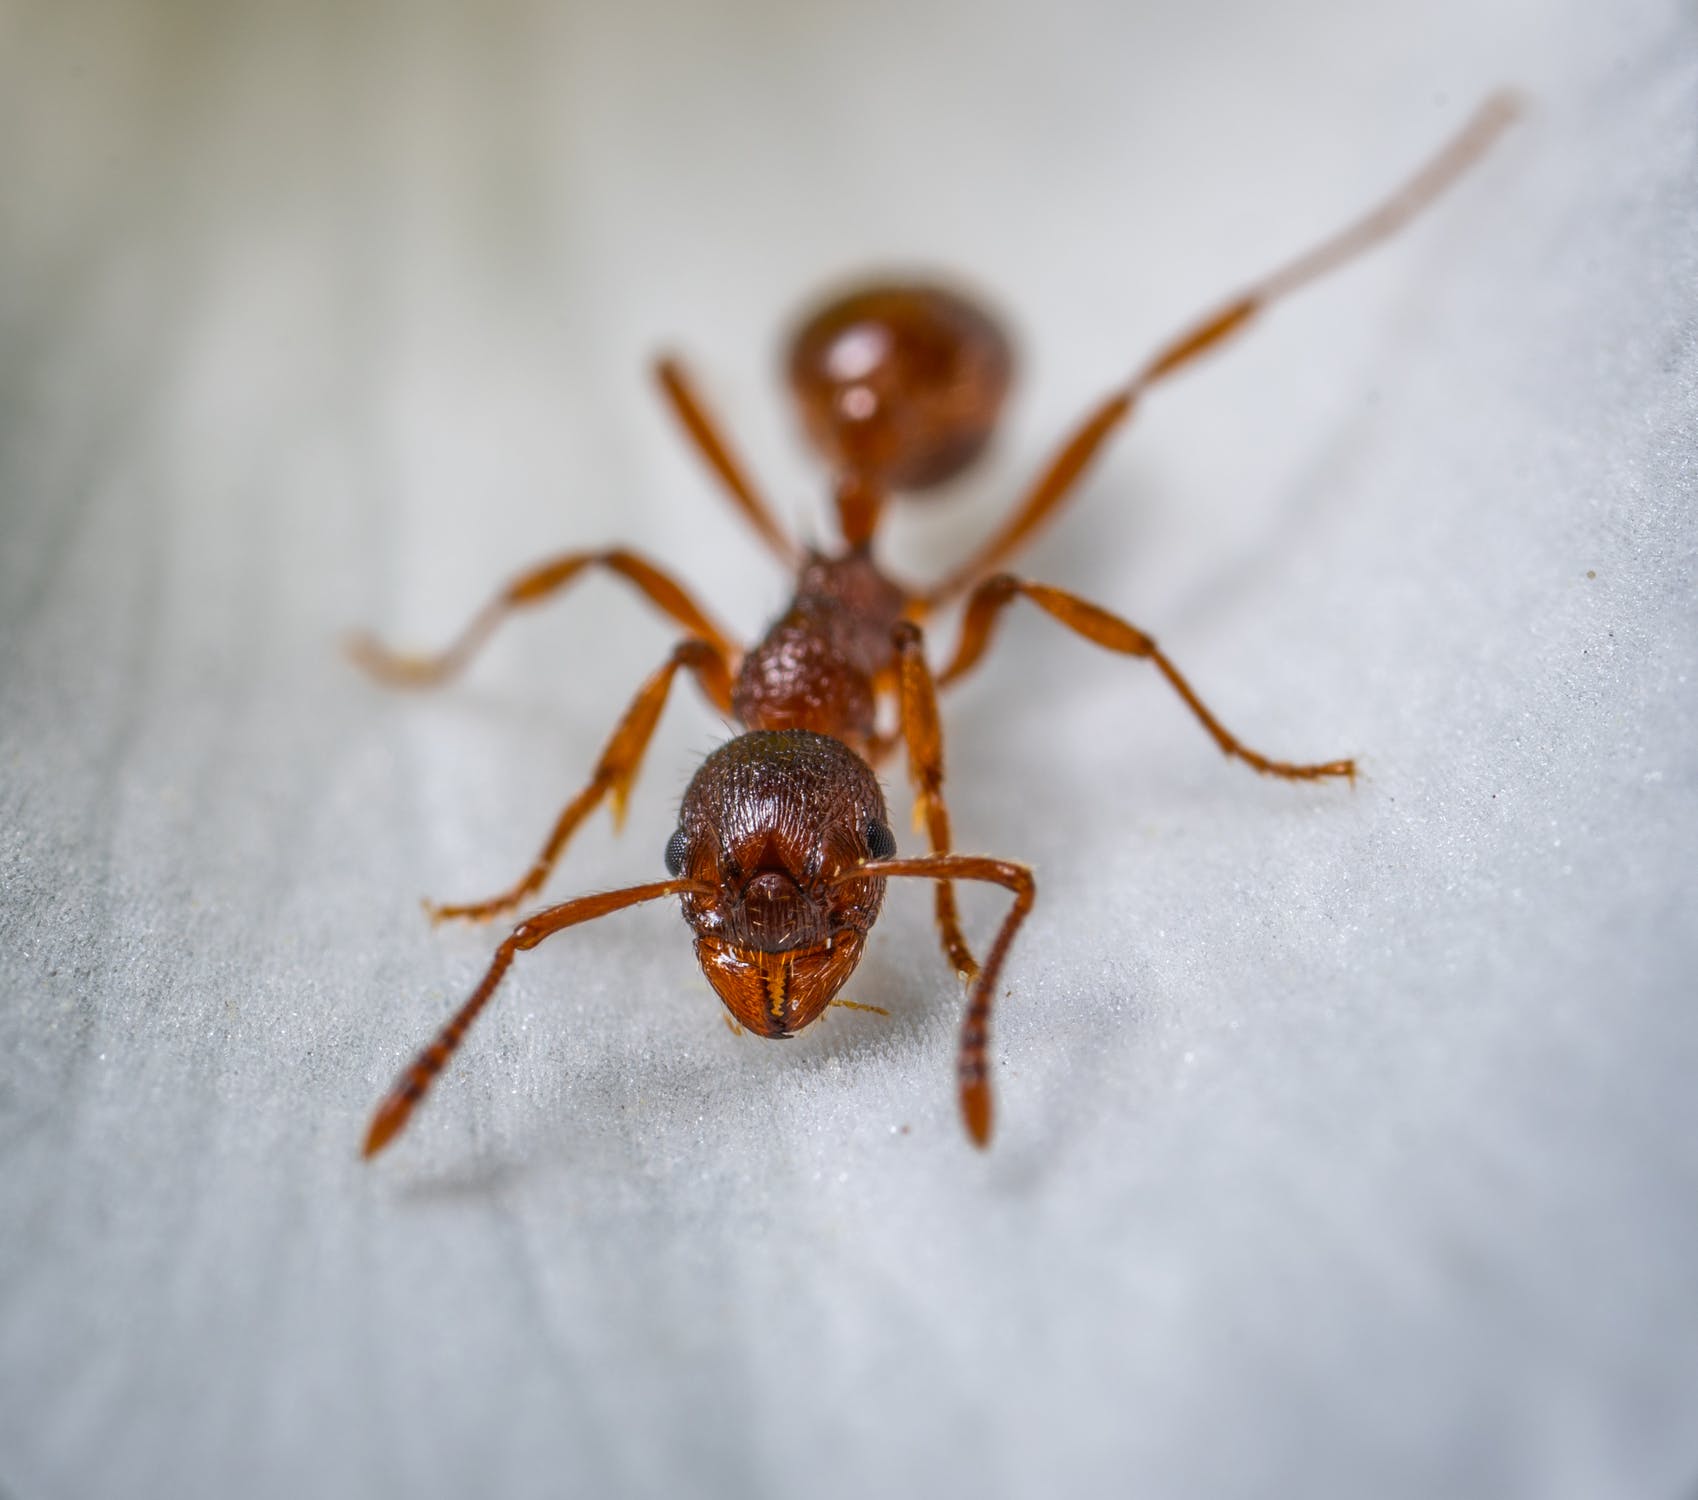 de hormigas: ¿en rincones de casa pueden esconderse? American Pest